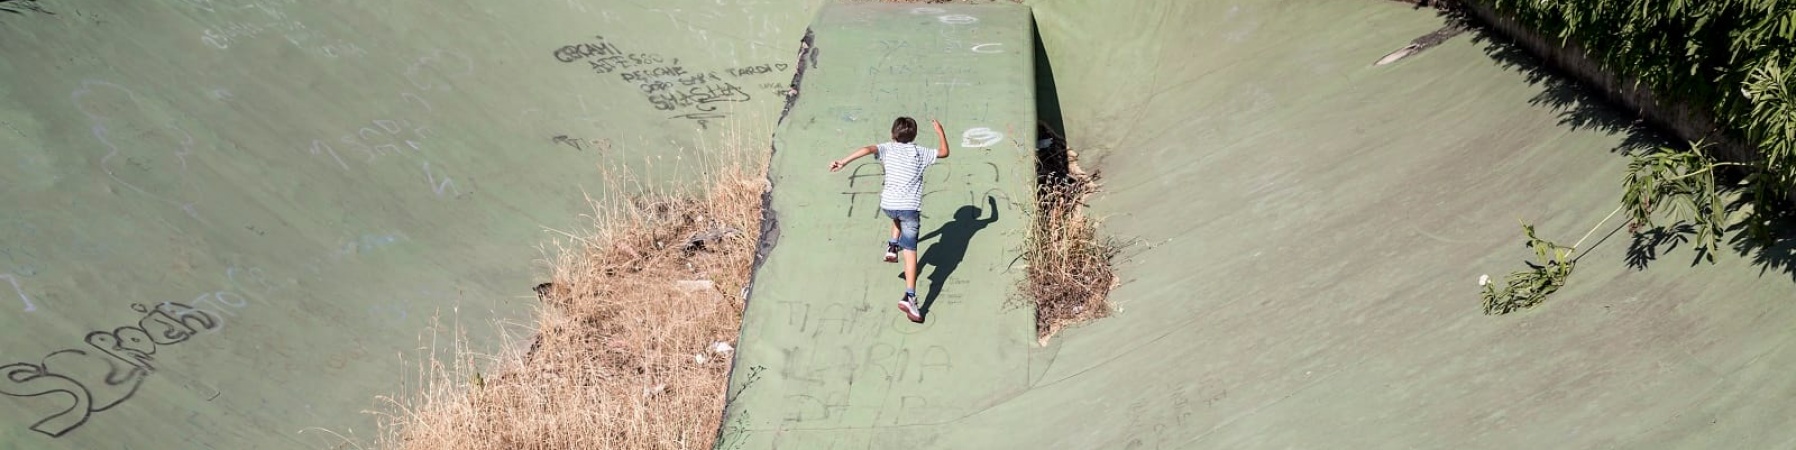 Un bambino di spalle corre in uno degli spazi abbandonati di Ponte di Nona a Roma